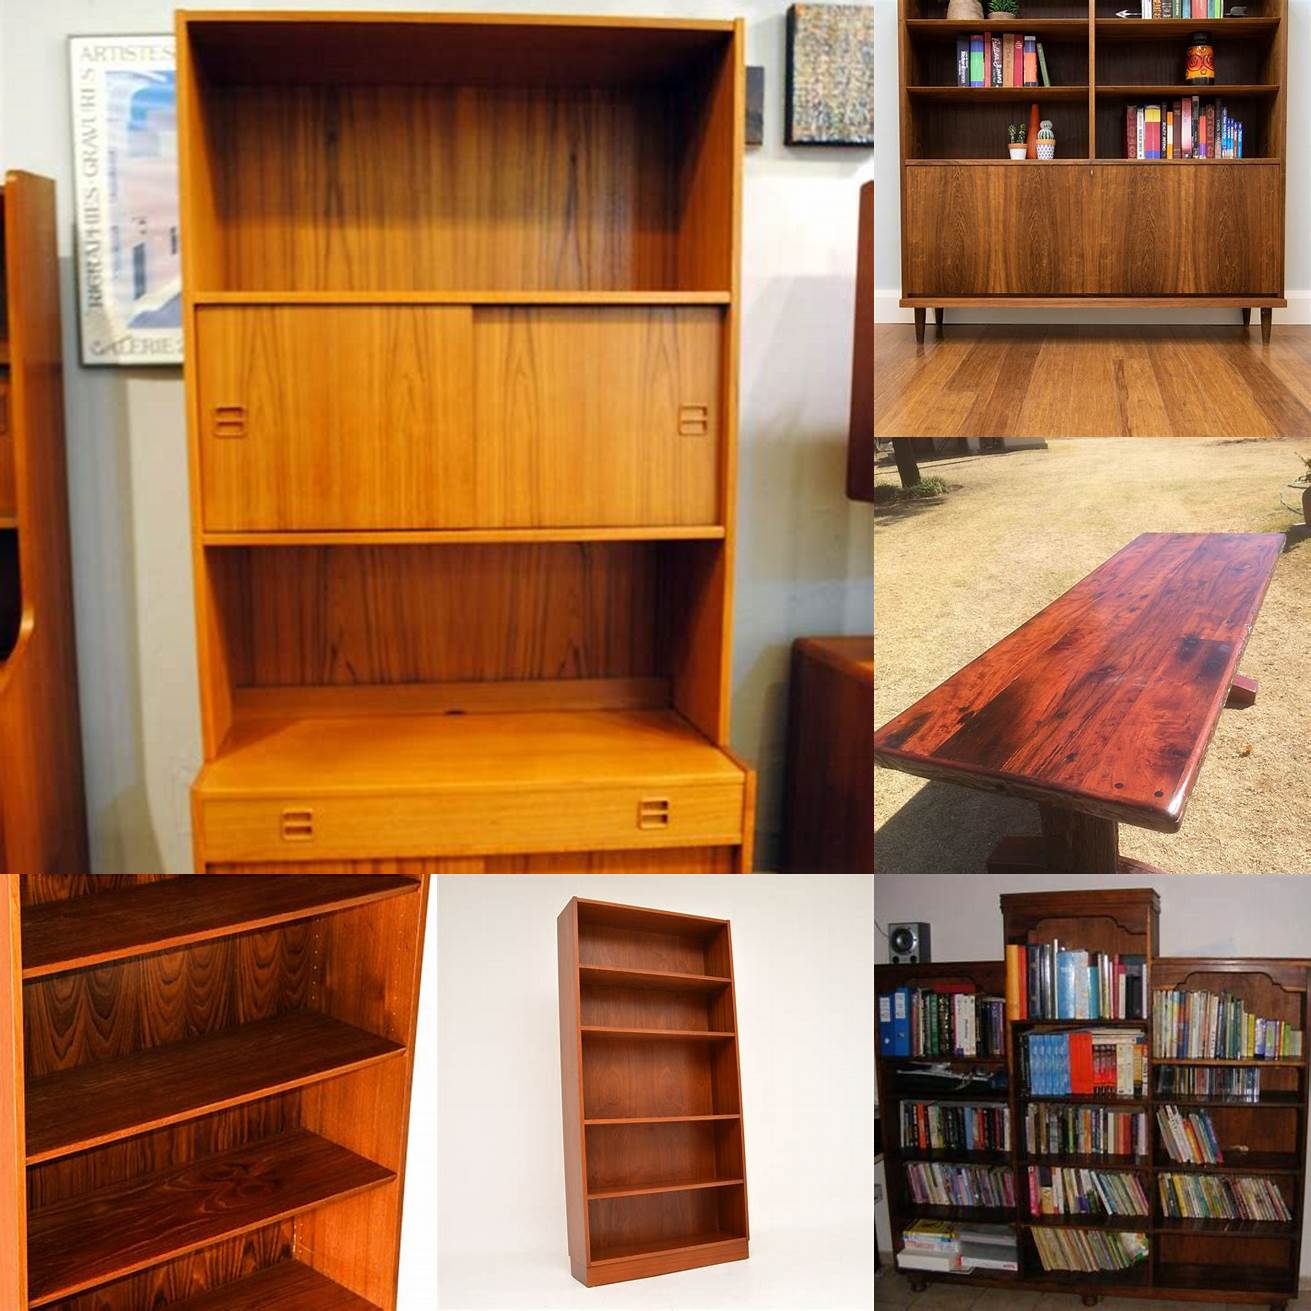 A bookshelf made of Rhodesian teak